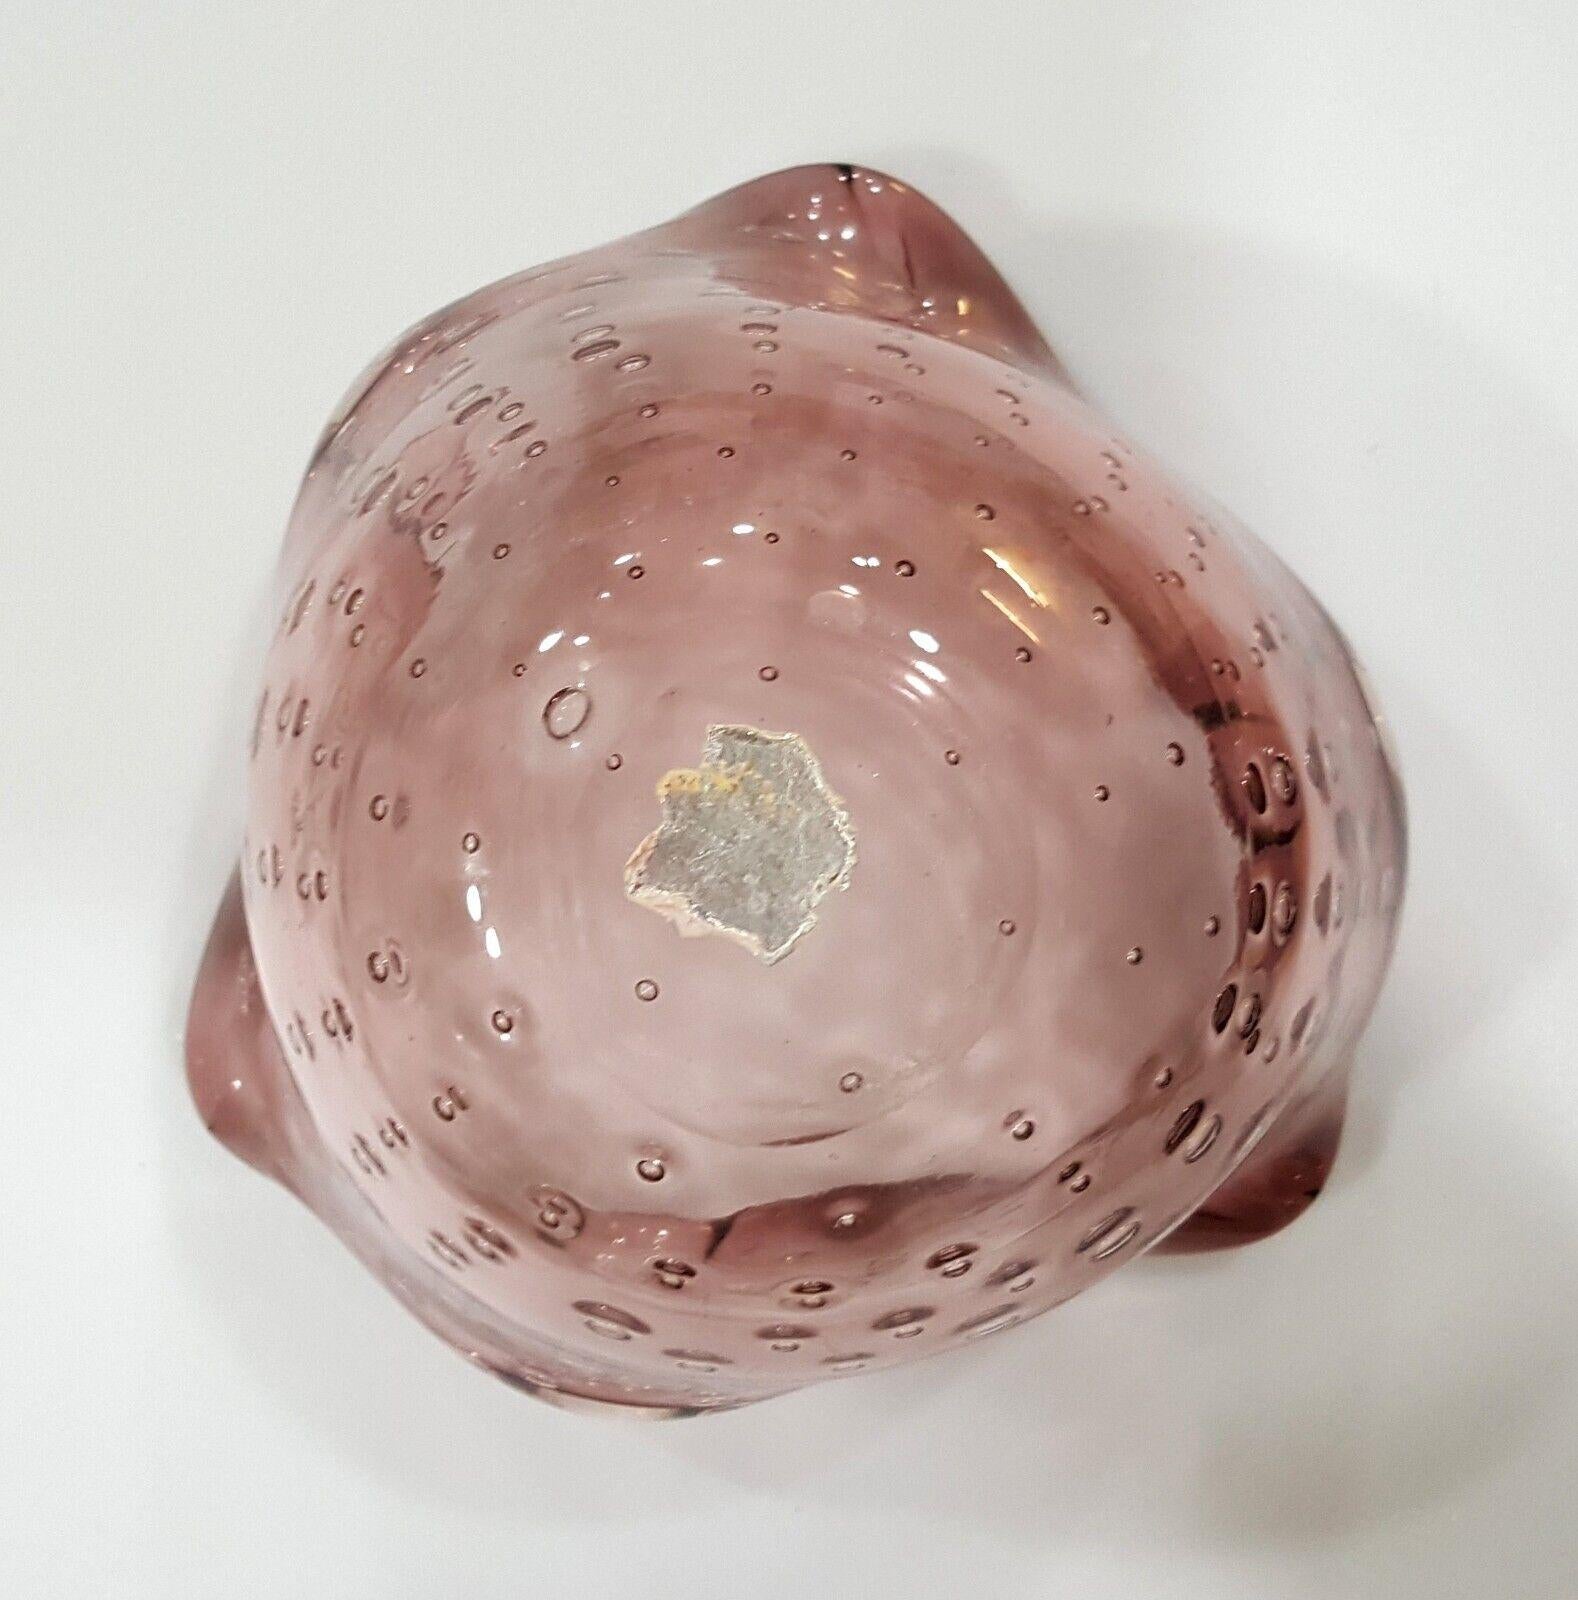 Murano Glass Bullicante Vintage Bowl with with label remains on bottom.
Les restes de l'étiquette en argent métallique que l'on trouve sur le fond de cette pièce sont généralement utilisés pour prouver l'authenticité du verre de Murano.  Ces labels